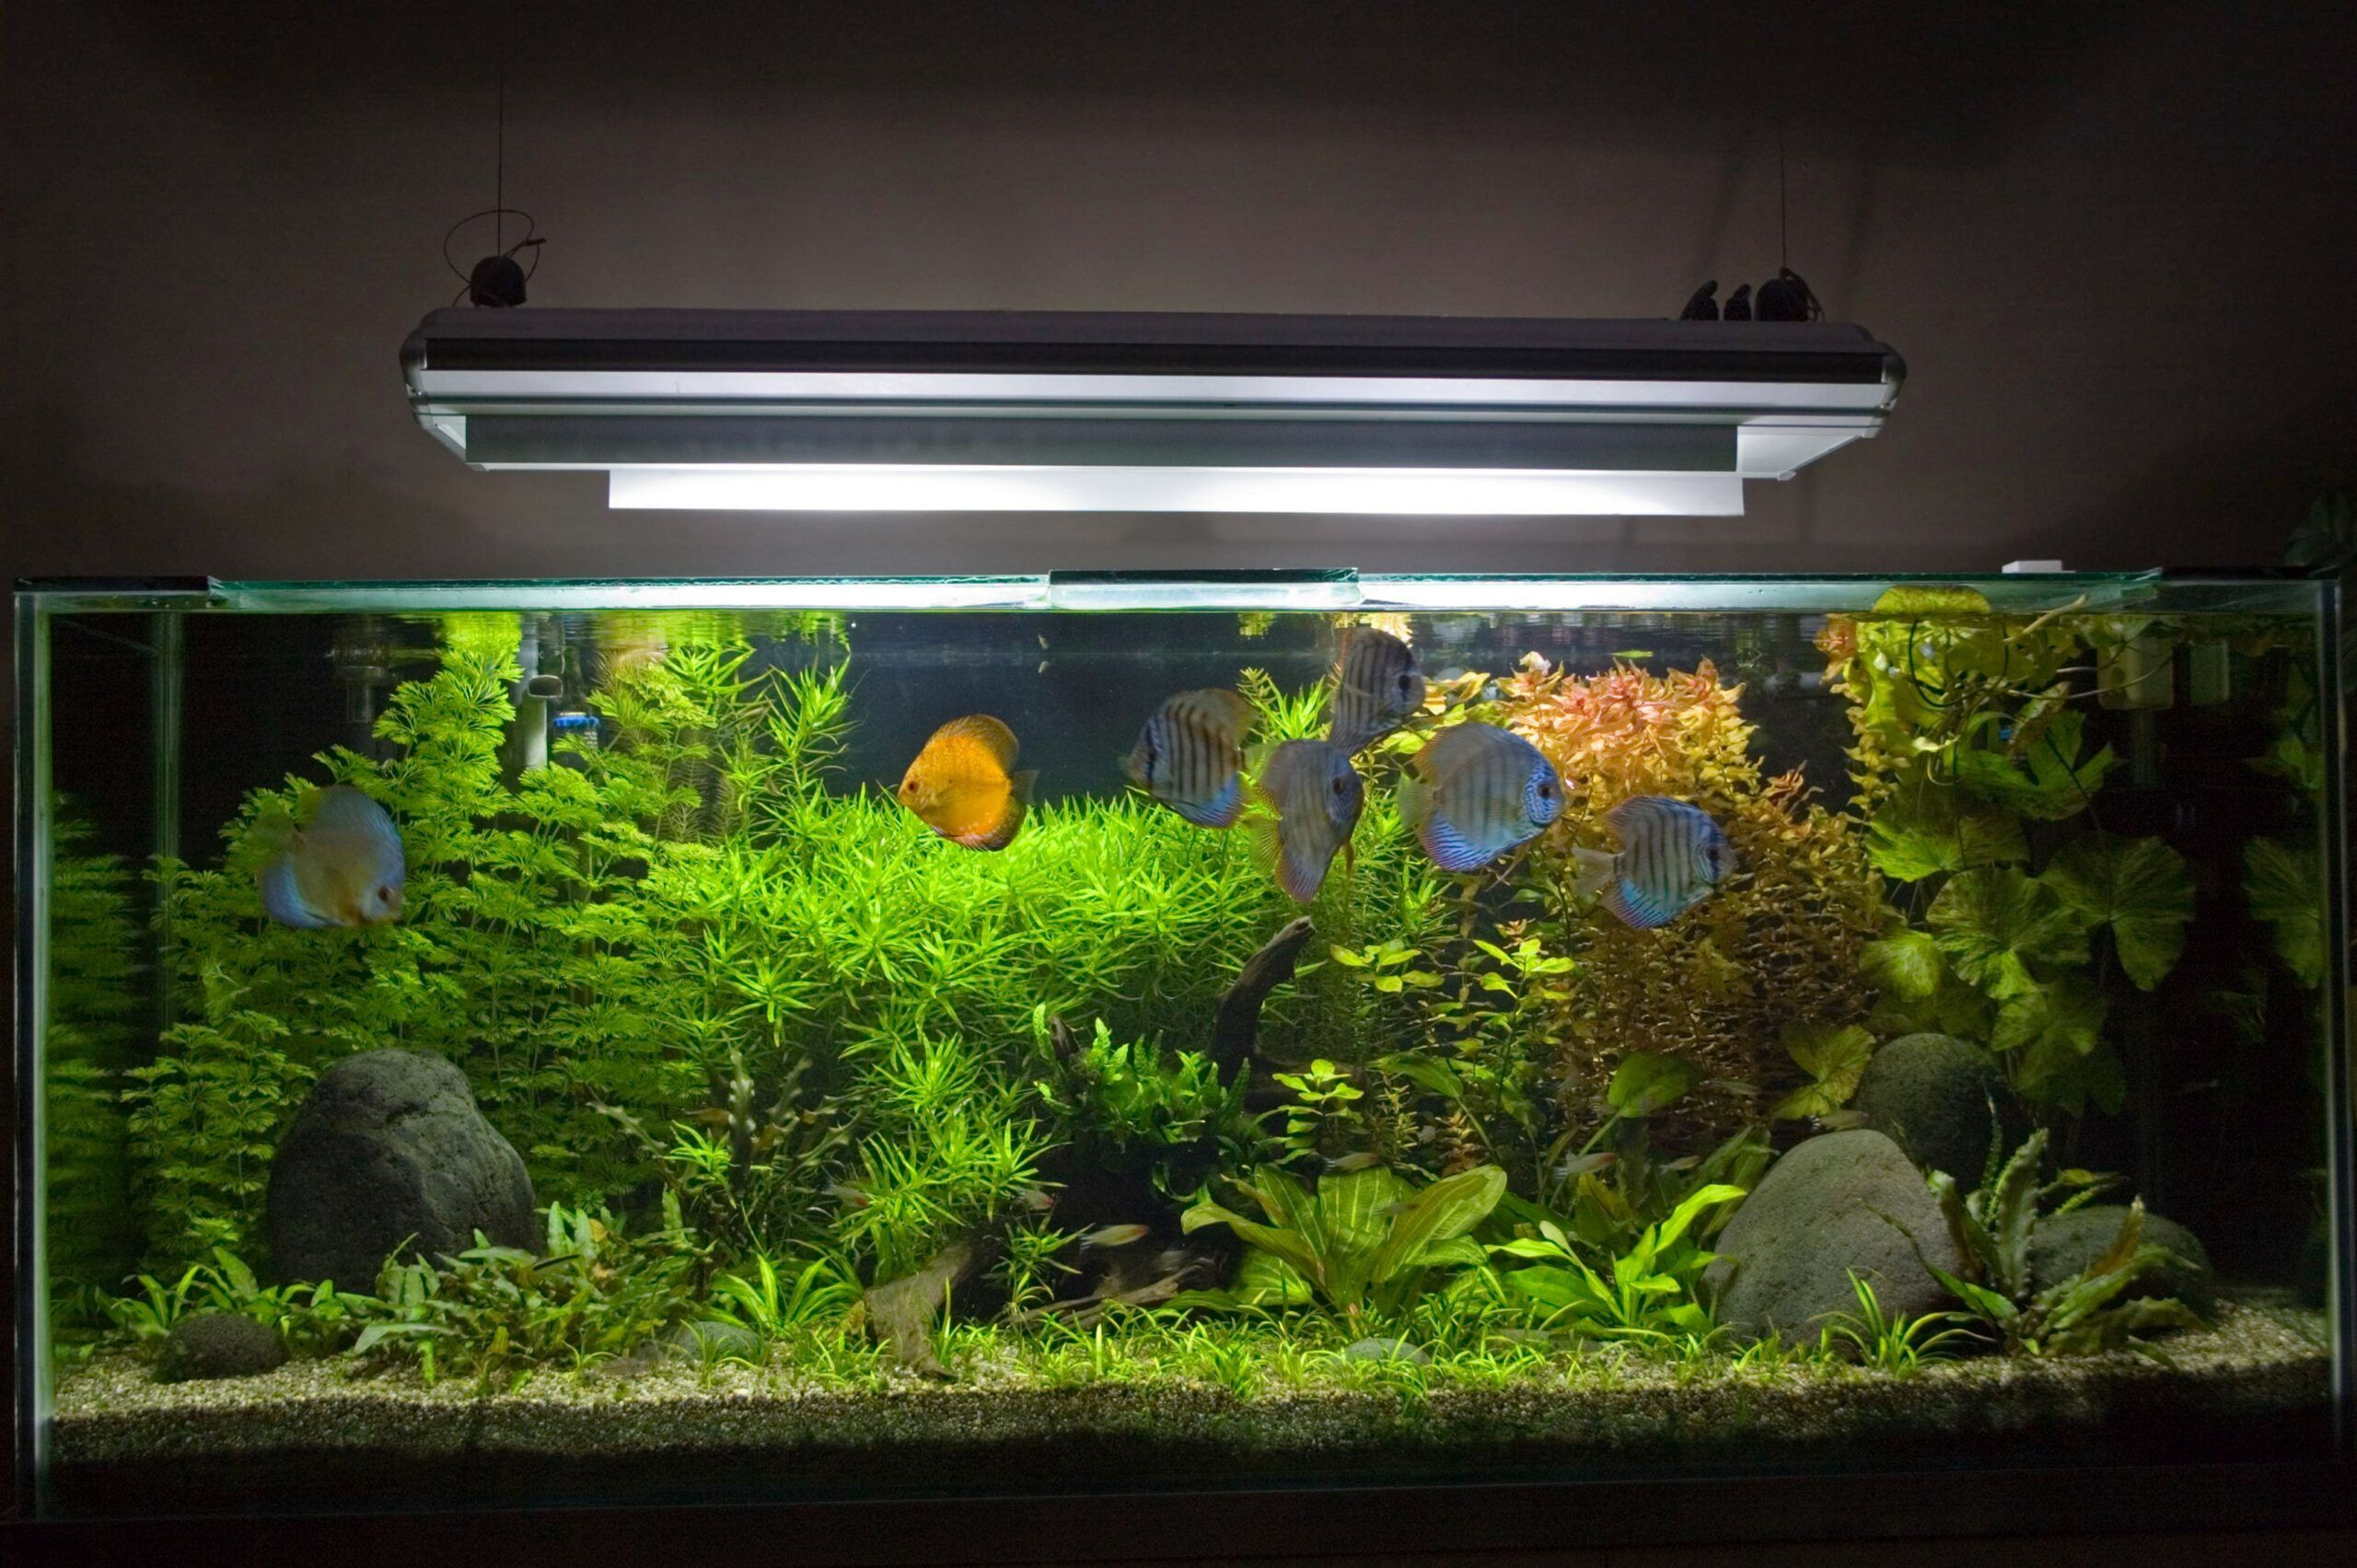 Cómo elegir un filtro para un acuario?